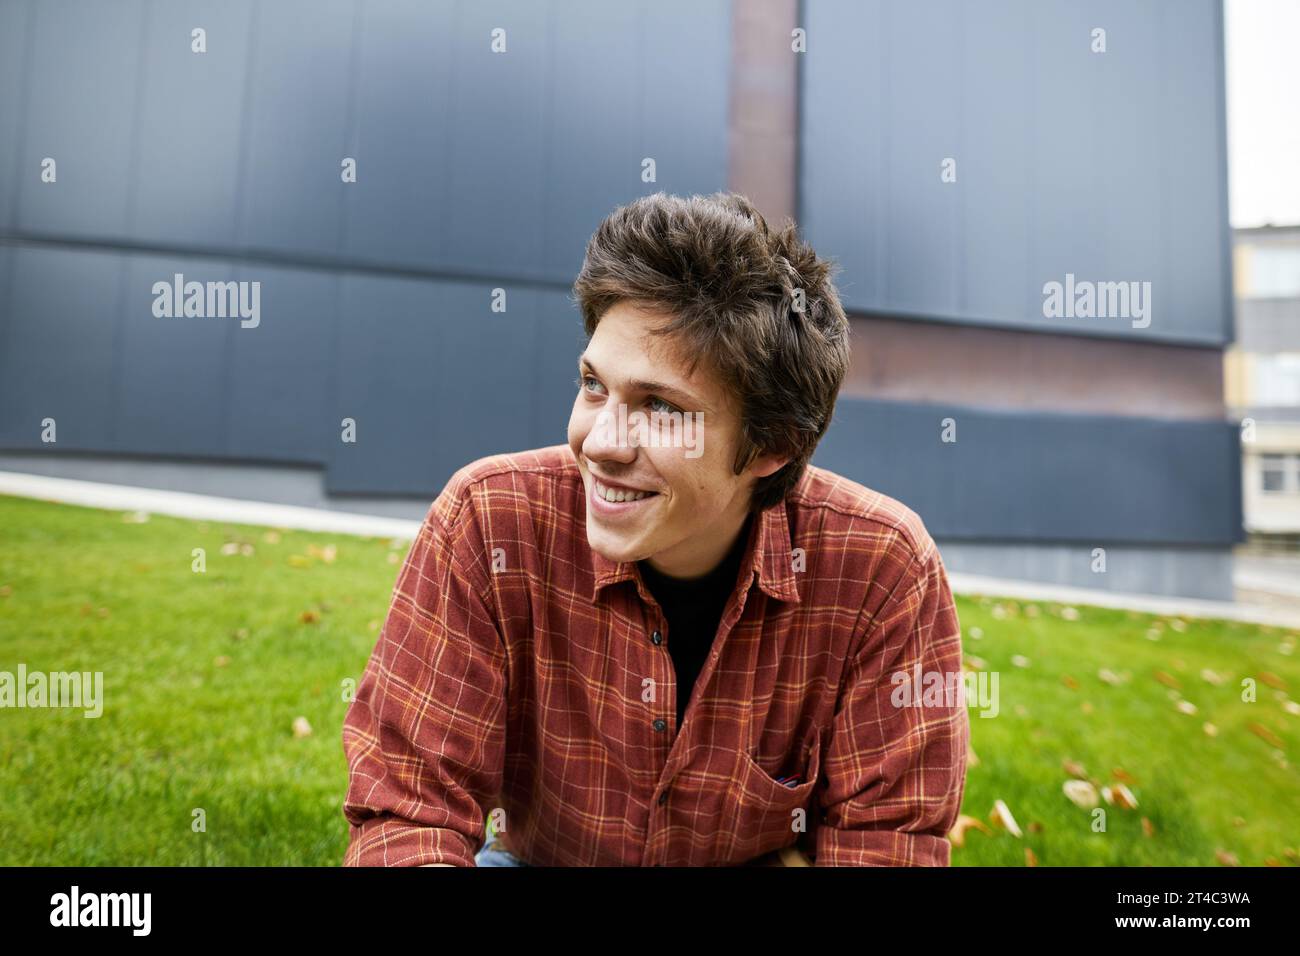 Lächelnder Student, der im Innenhof des Campus wegschaut Stockfoto